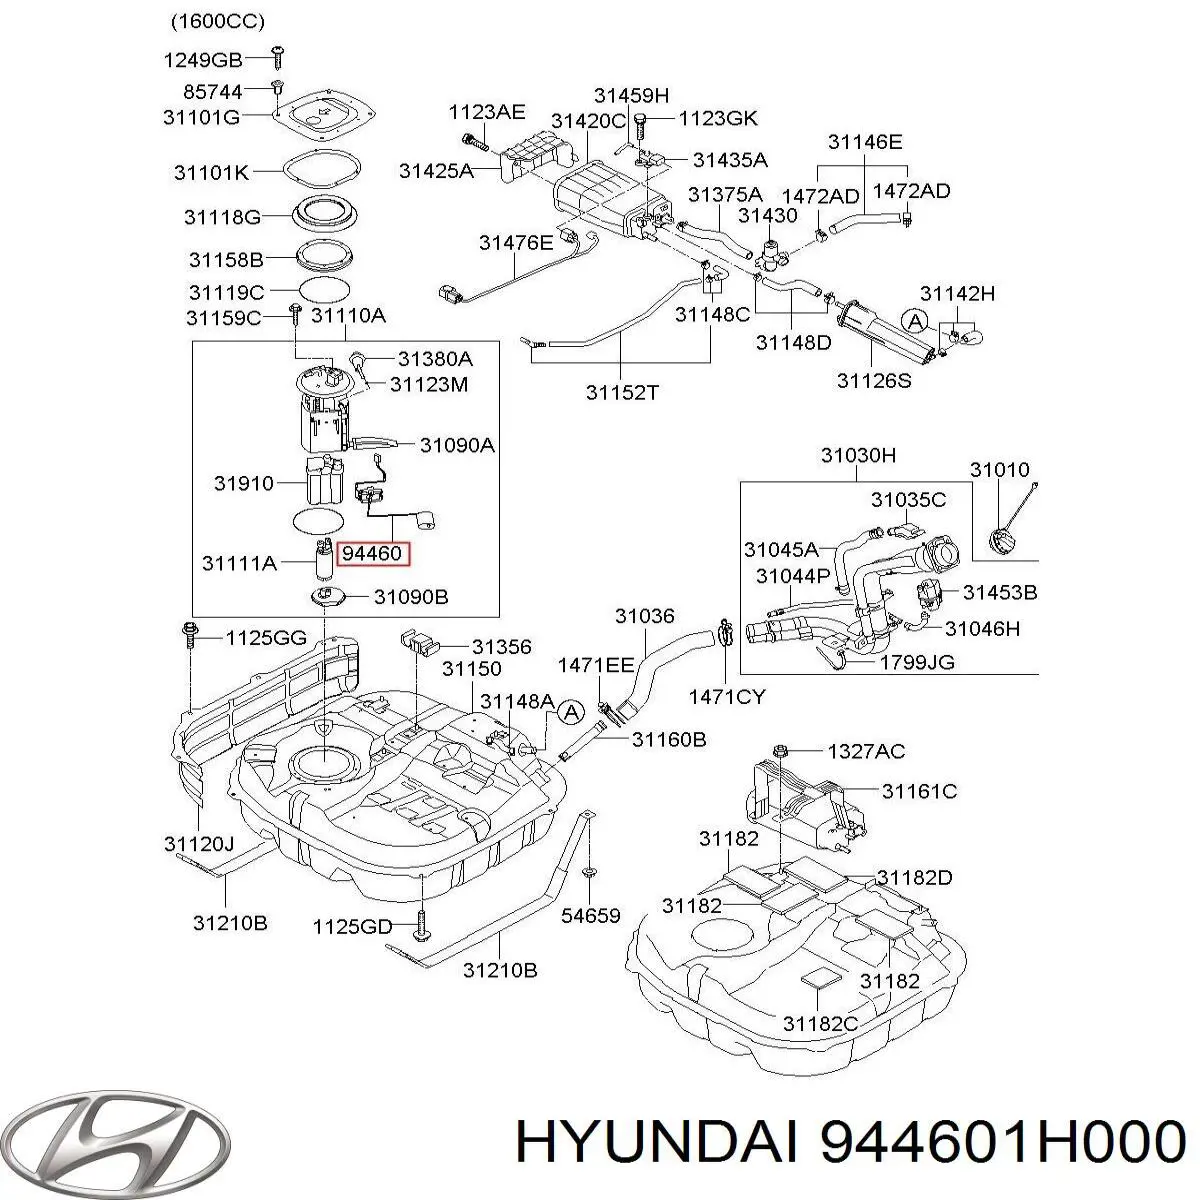 Sensor do nível de combustível no tanque para Hyundai Elantra (HD)